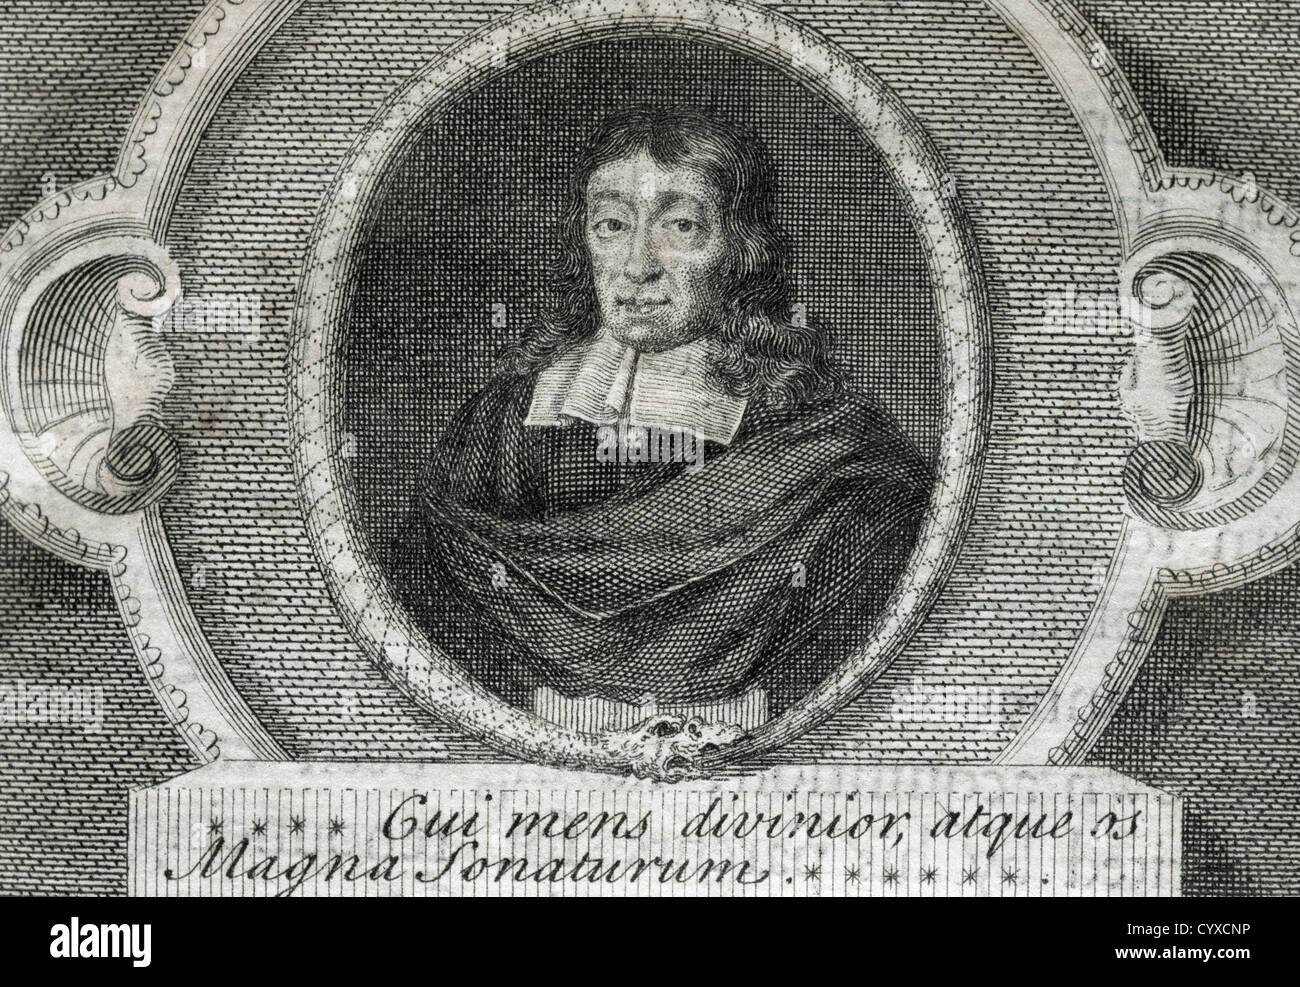 John Milton (1608-1674). English poet. Engraving. 18th century. Stock Photo